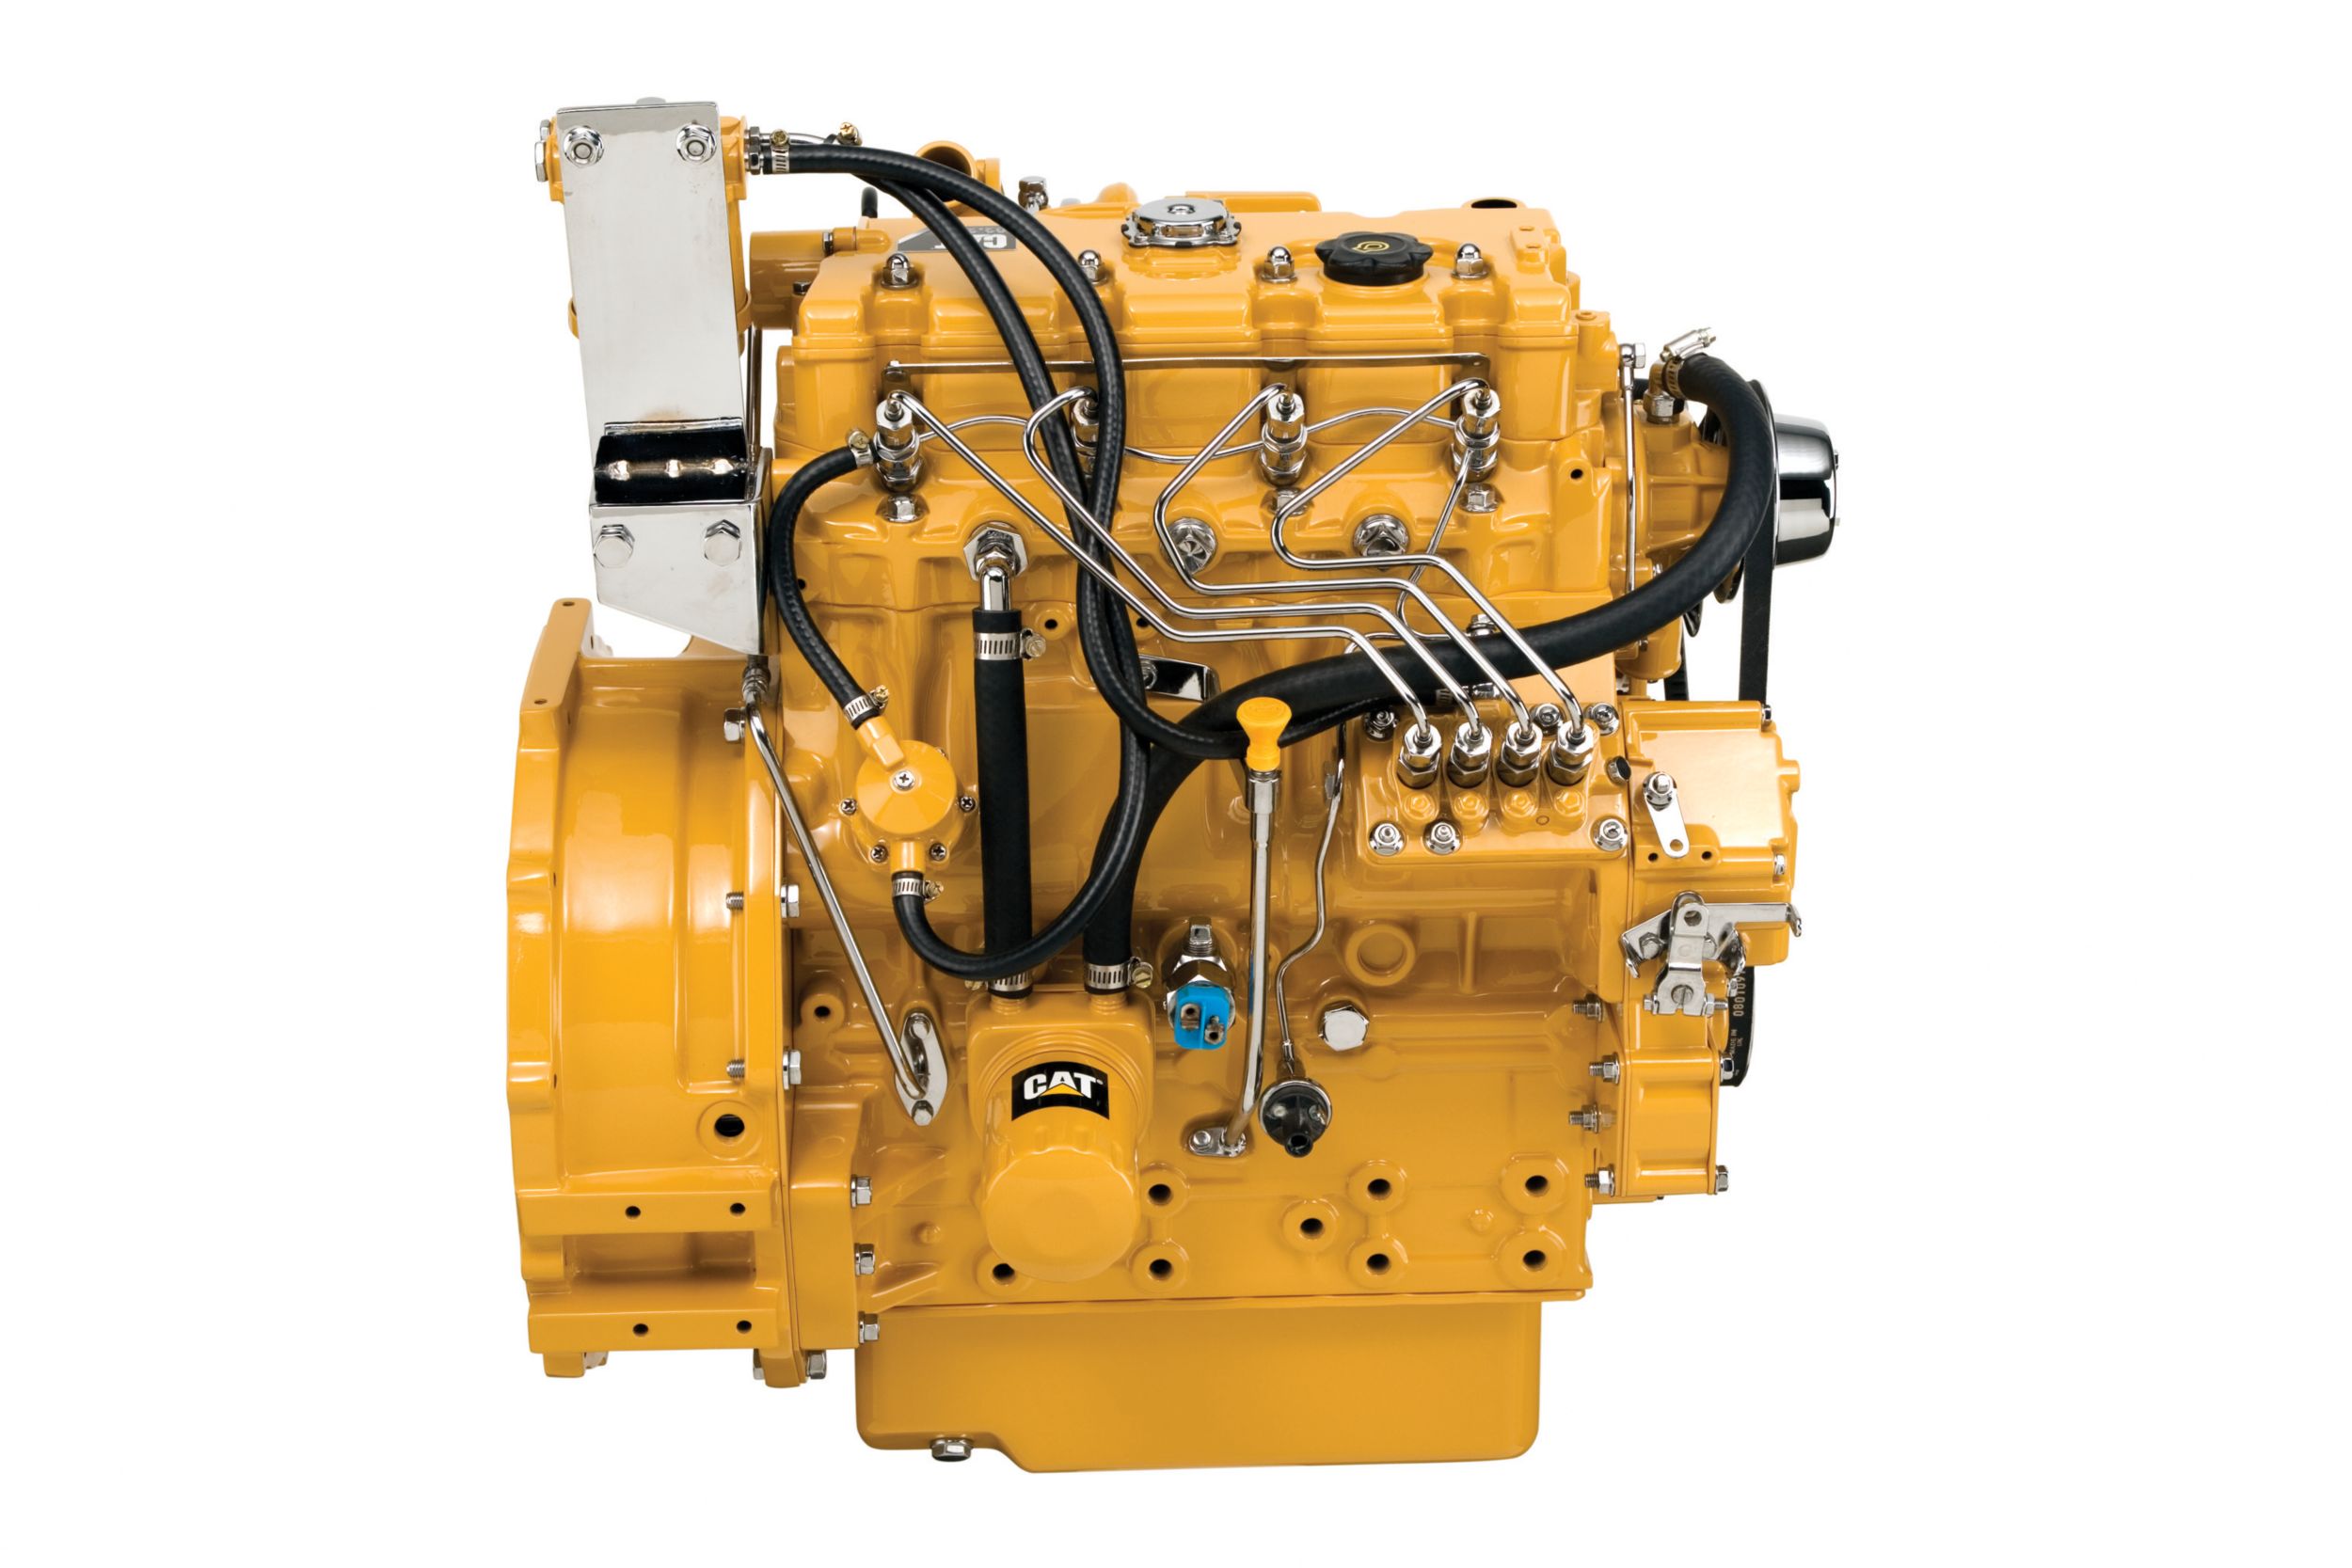 Motores Diesel C2.2 LRC - Menos Regulamentados e Não Regulamentados